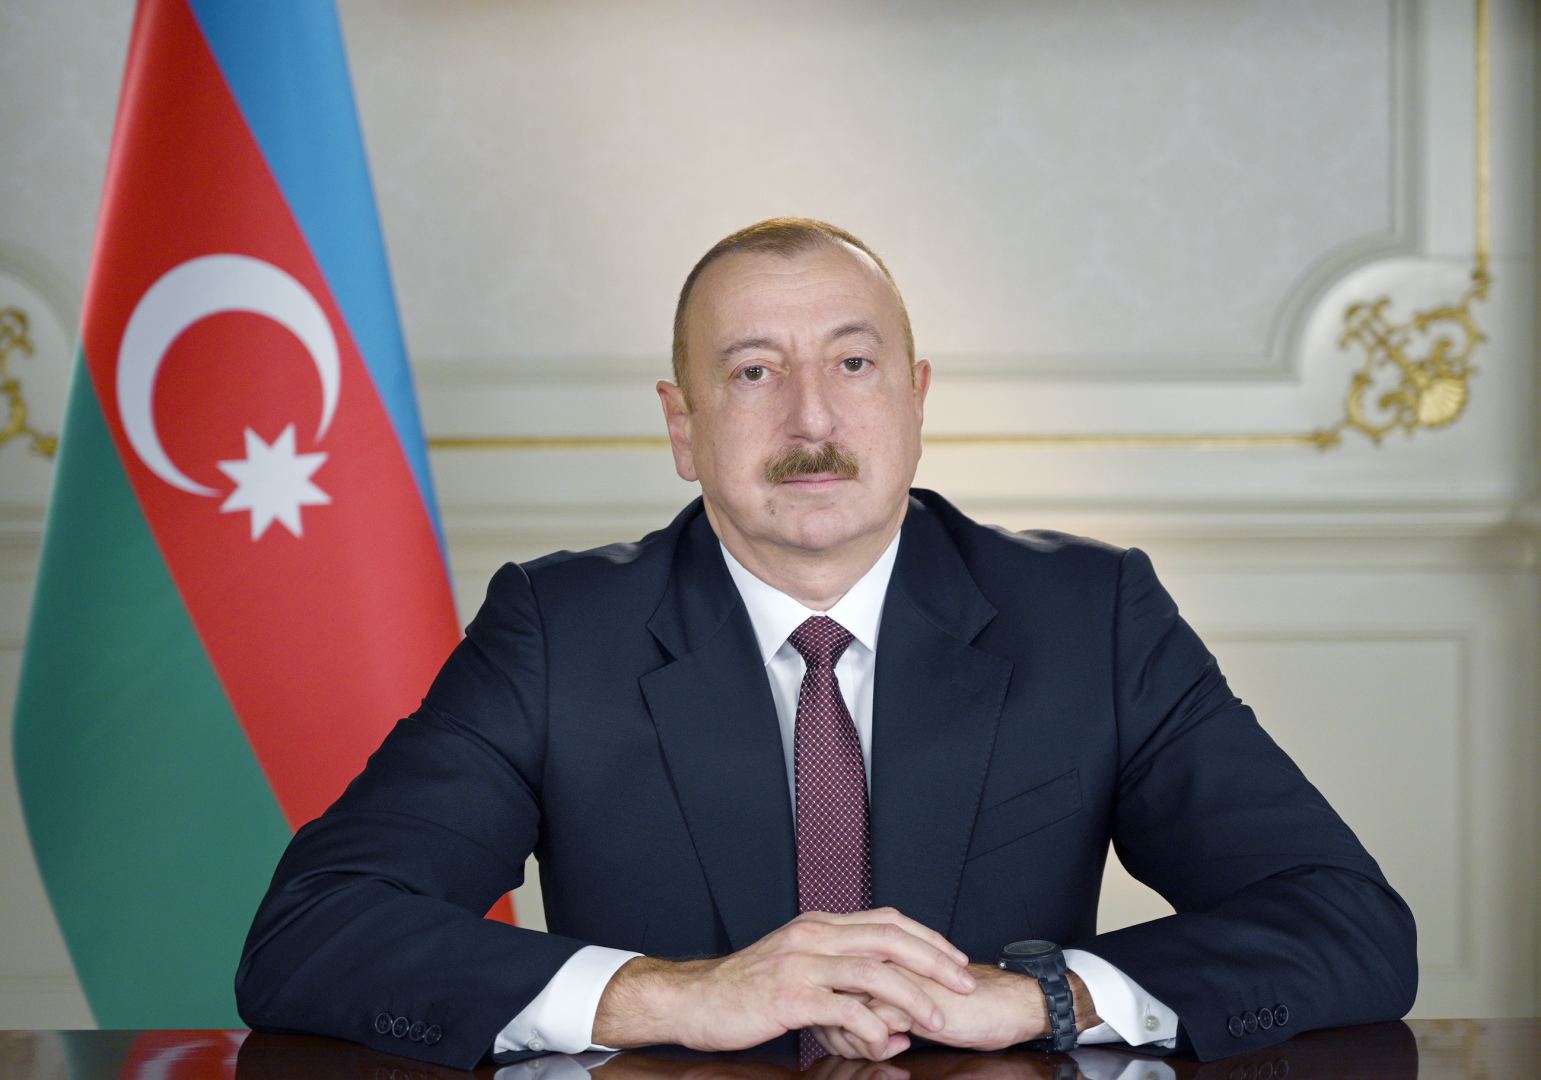 Azərbaycan Prezidenti: Biz Pakistanın müdafiə sənayesi məhsullarına çıxışımız olduğuna görə məmnunuq